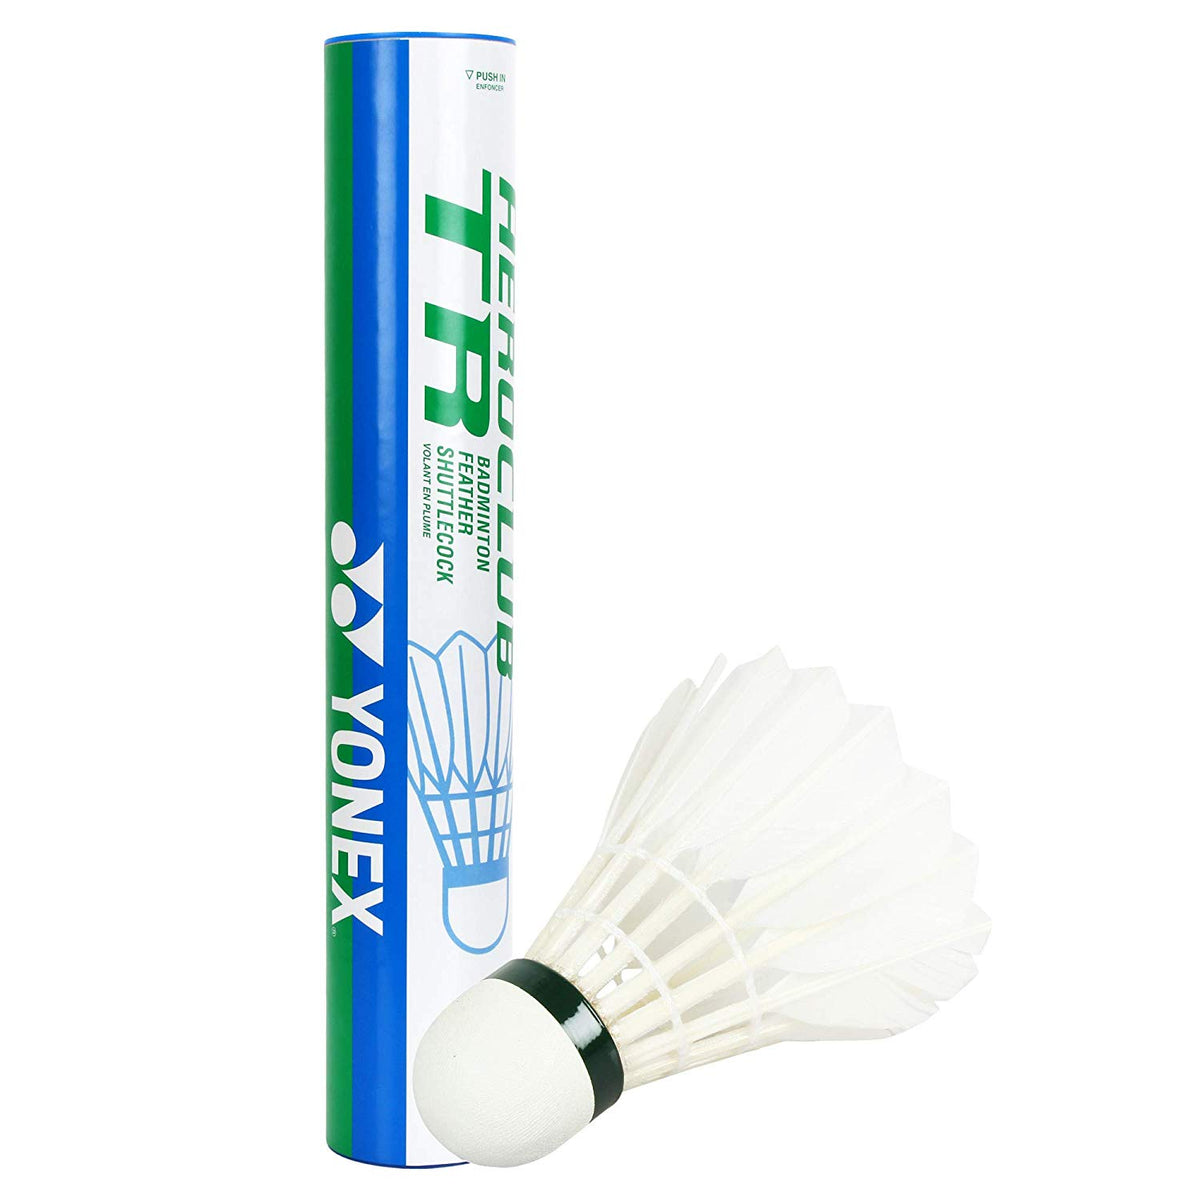 badminton feather shuttlecock price